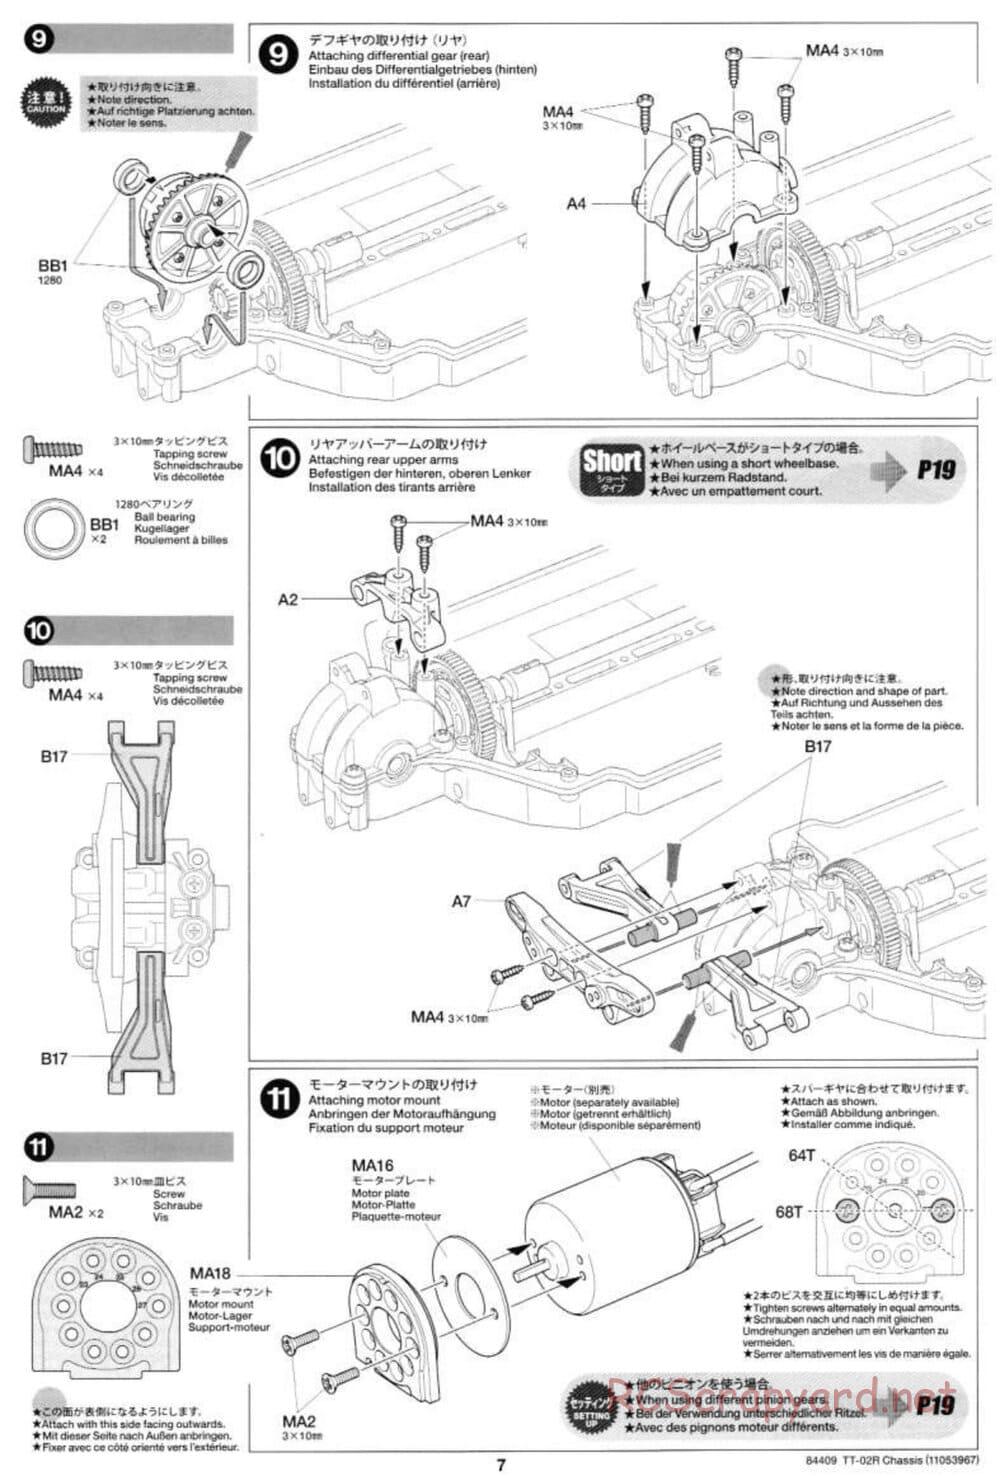 Tamiya - TT-02R Chassis - Manual - Page 7